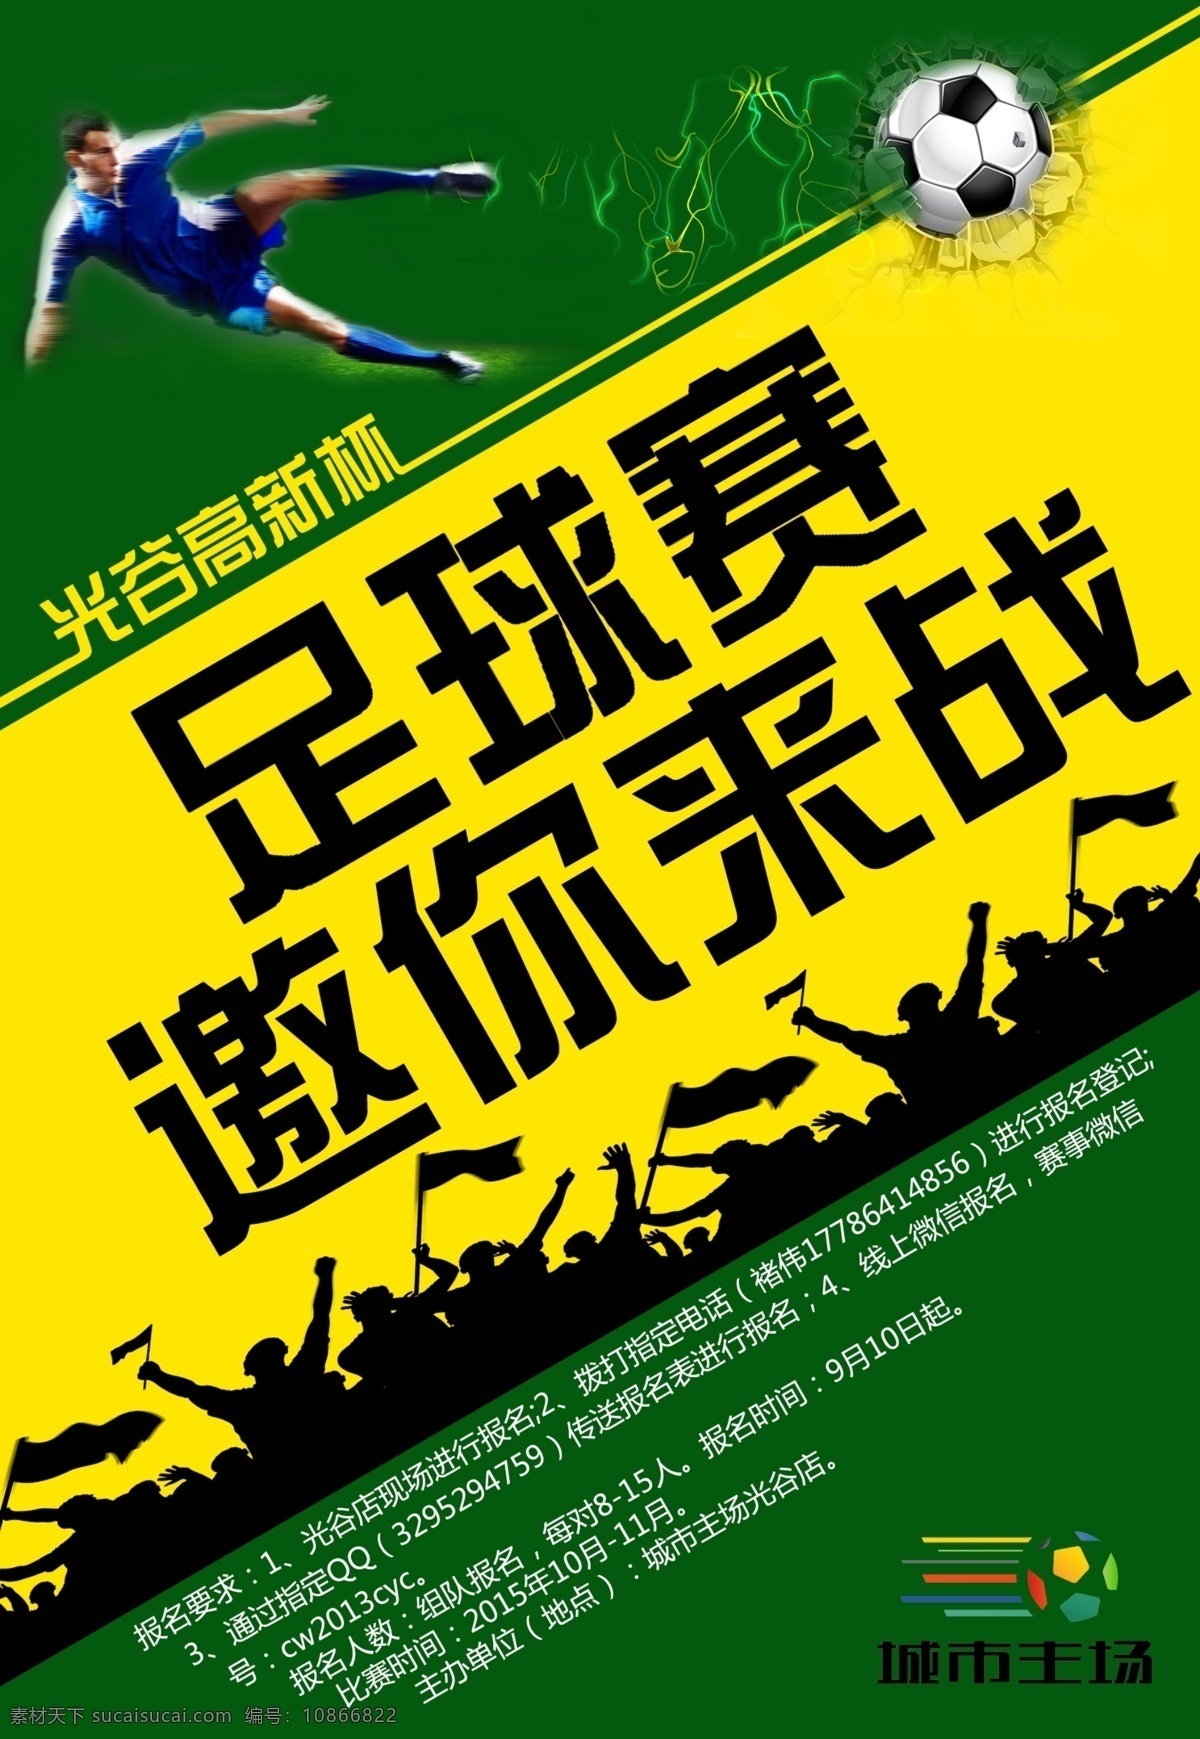 足球赛事 足球 赛事 踢球 海报 宣传单 单页 清 设计图 高清图片素材 设计素材 模板设计 黄色